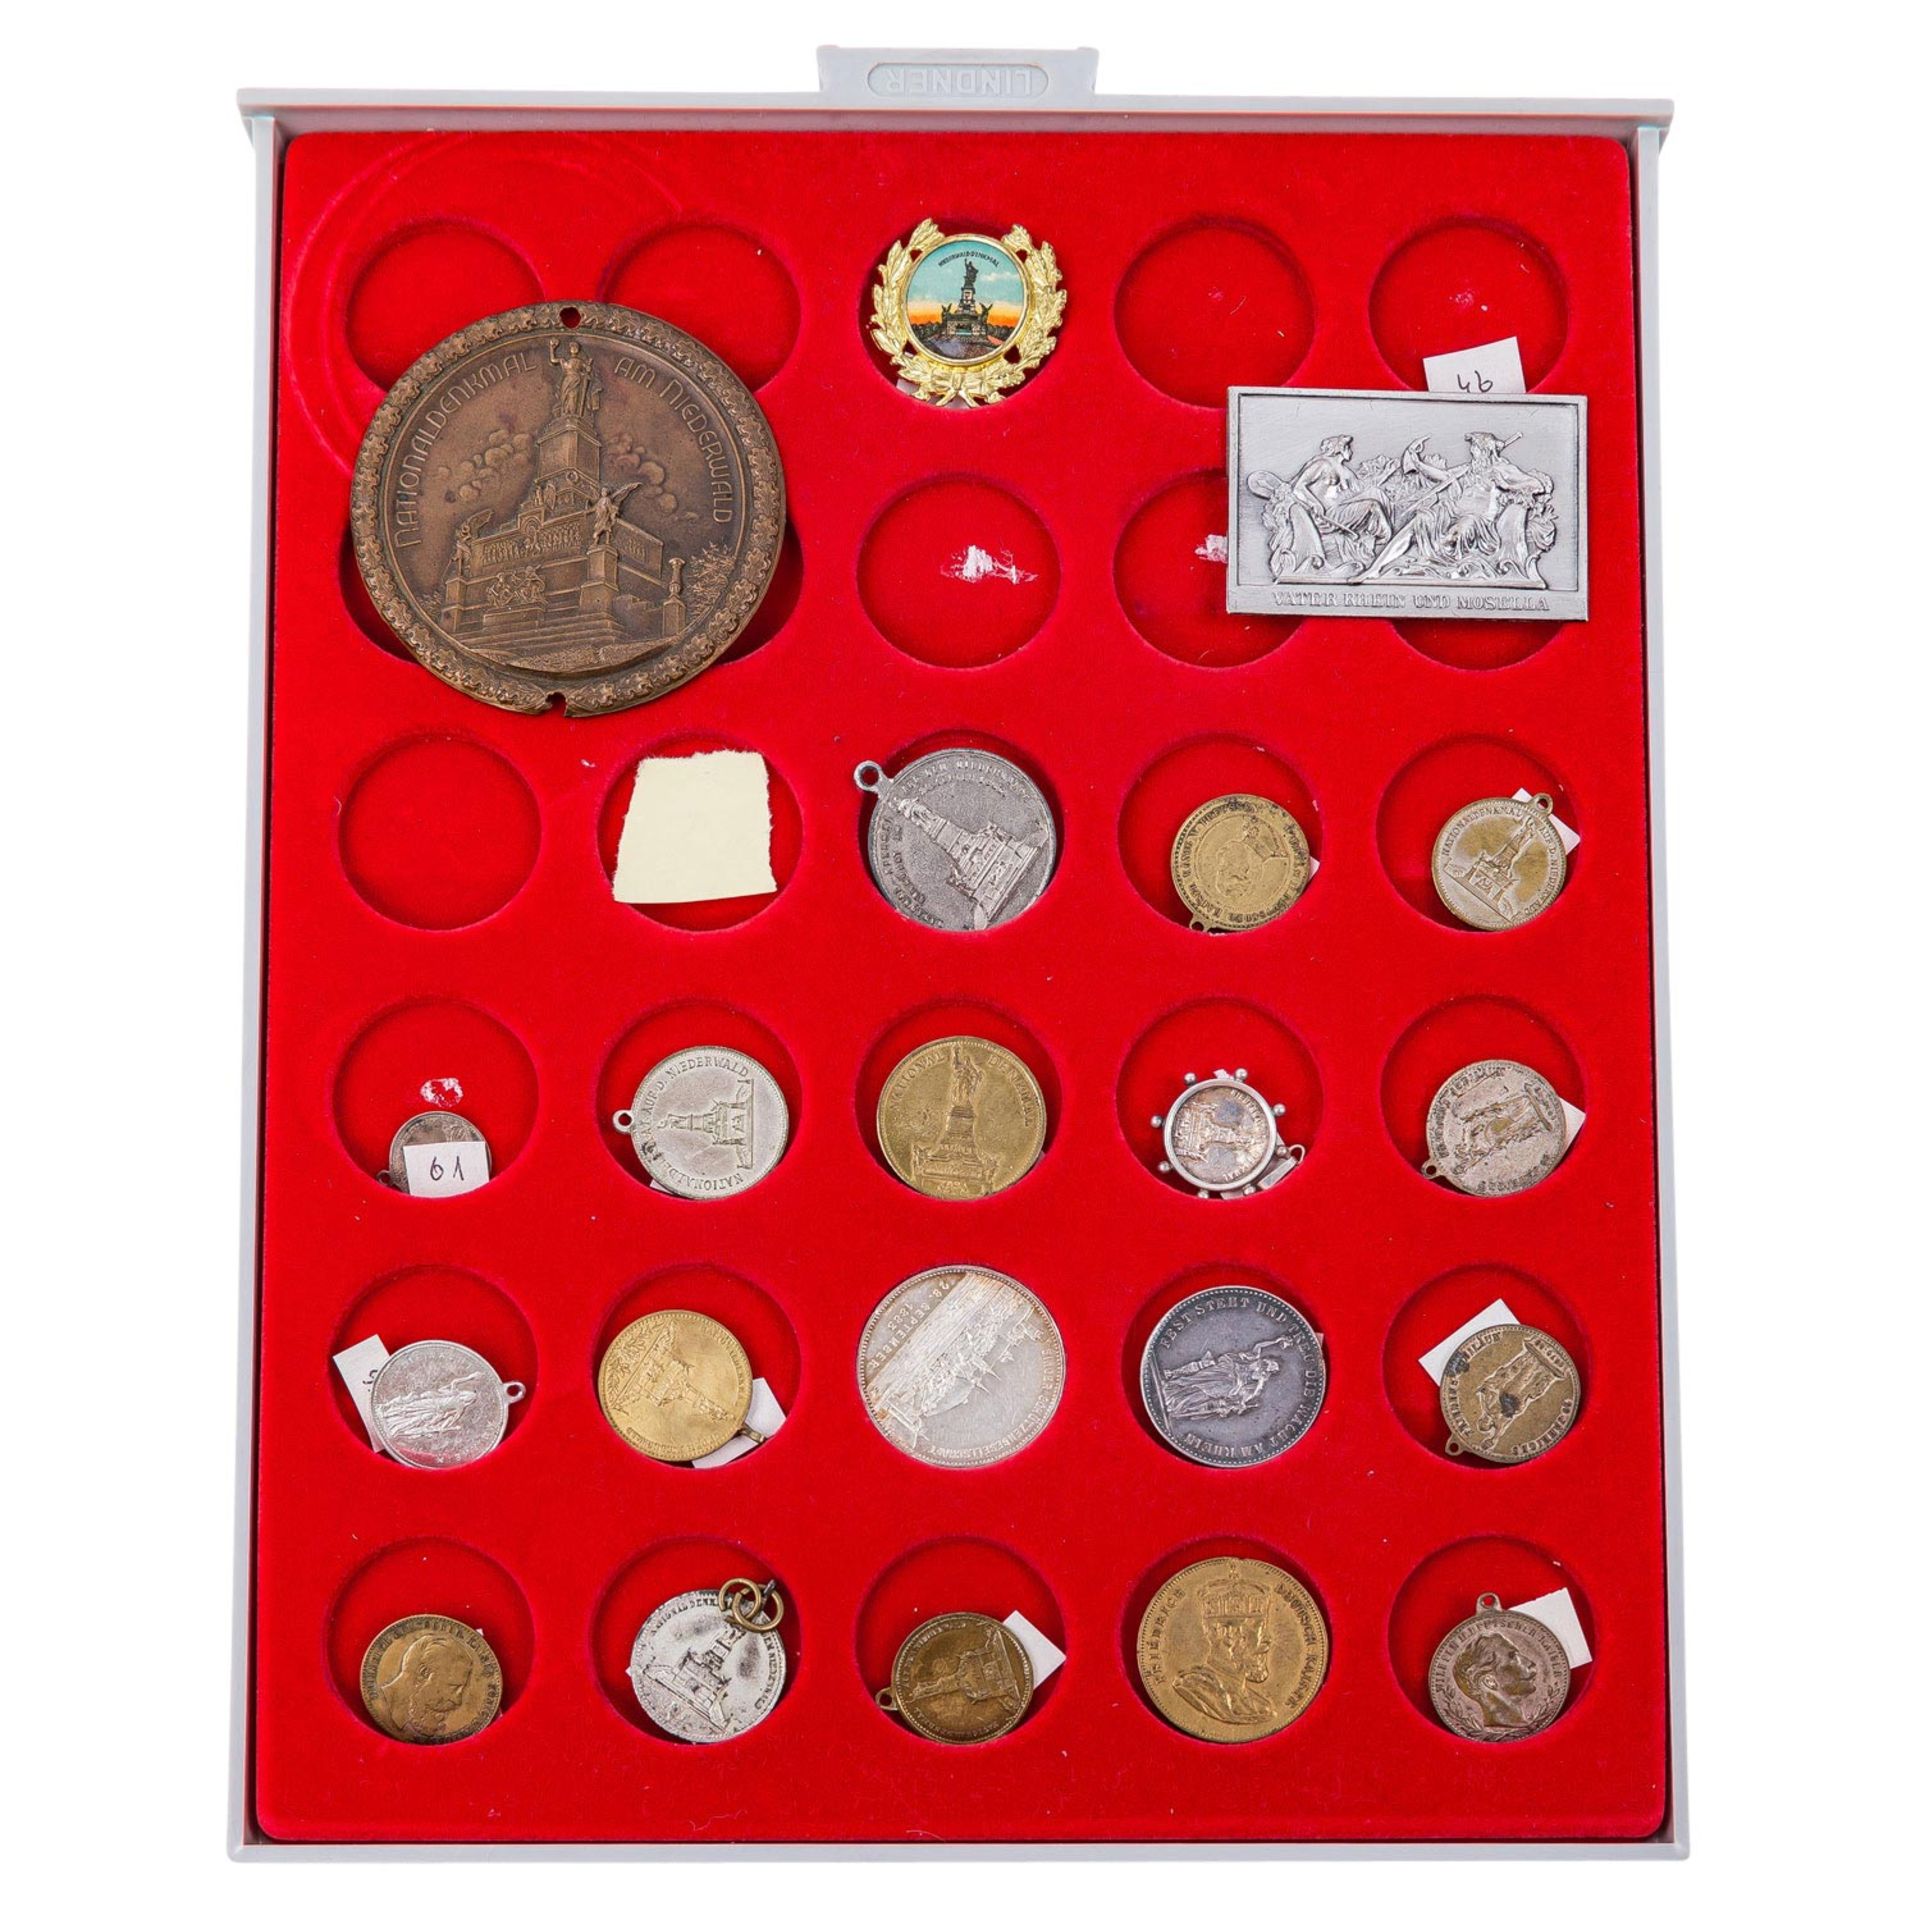 Umfangreiche Sammlung an Plaketten, Medaillen, Medaillons, Abzeichen etc. mit dem nationalen Niederw - Bild 2 aus 9